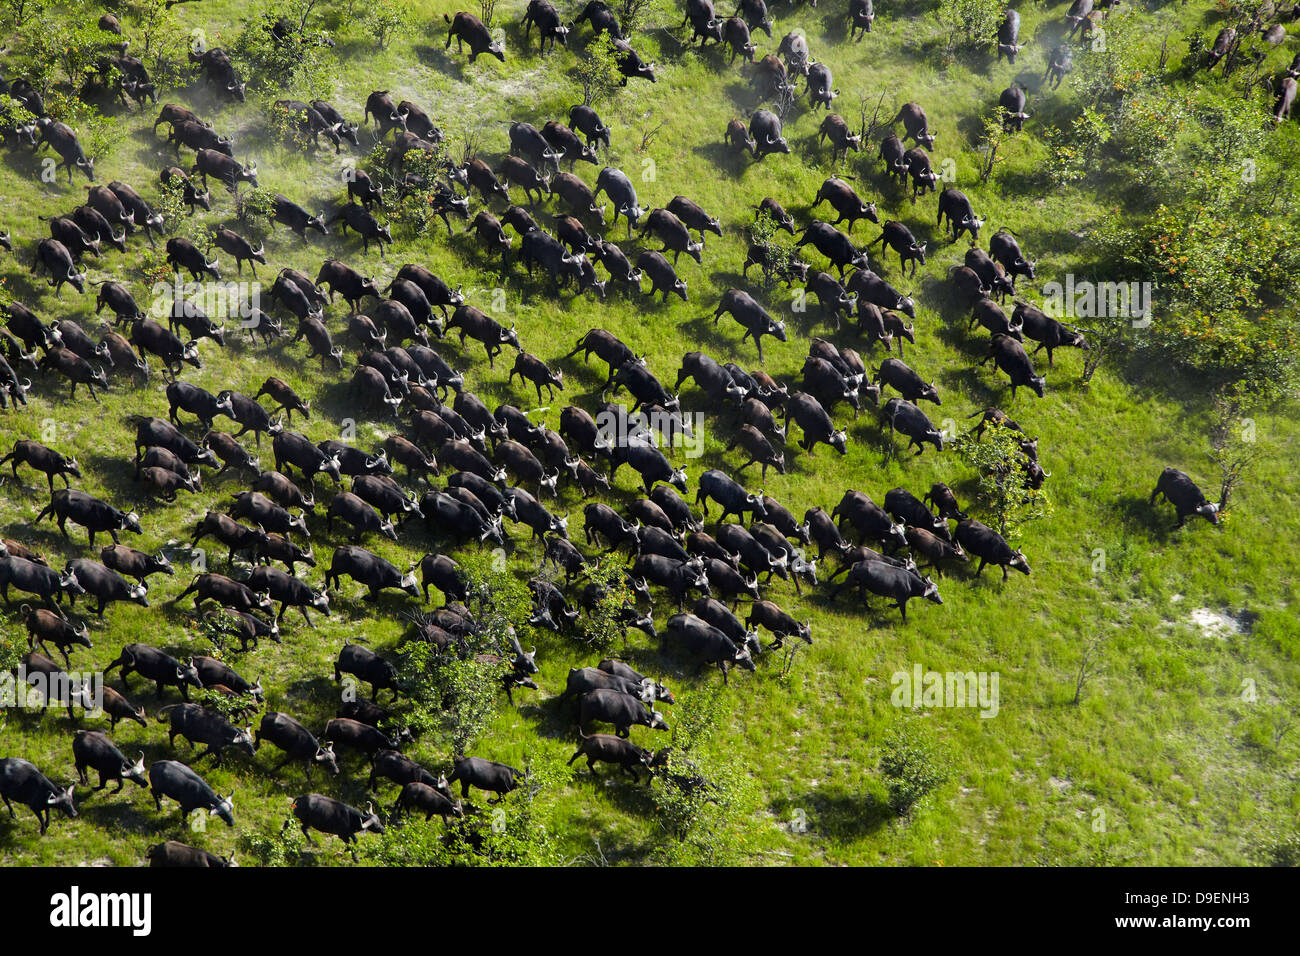 Cape buffalo (Syncerus caffer caffer), el delta del Okavango, Botswana, África- antena Foto de stock